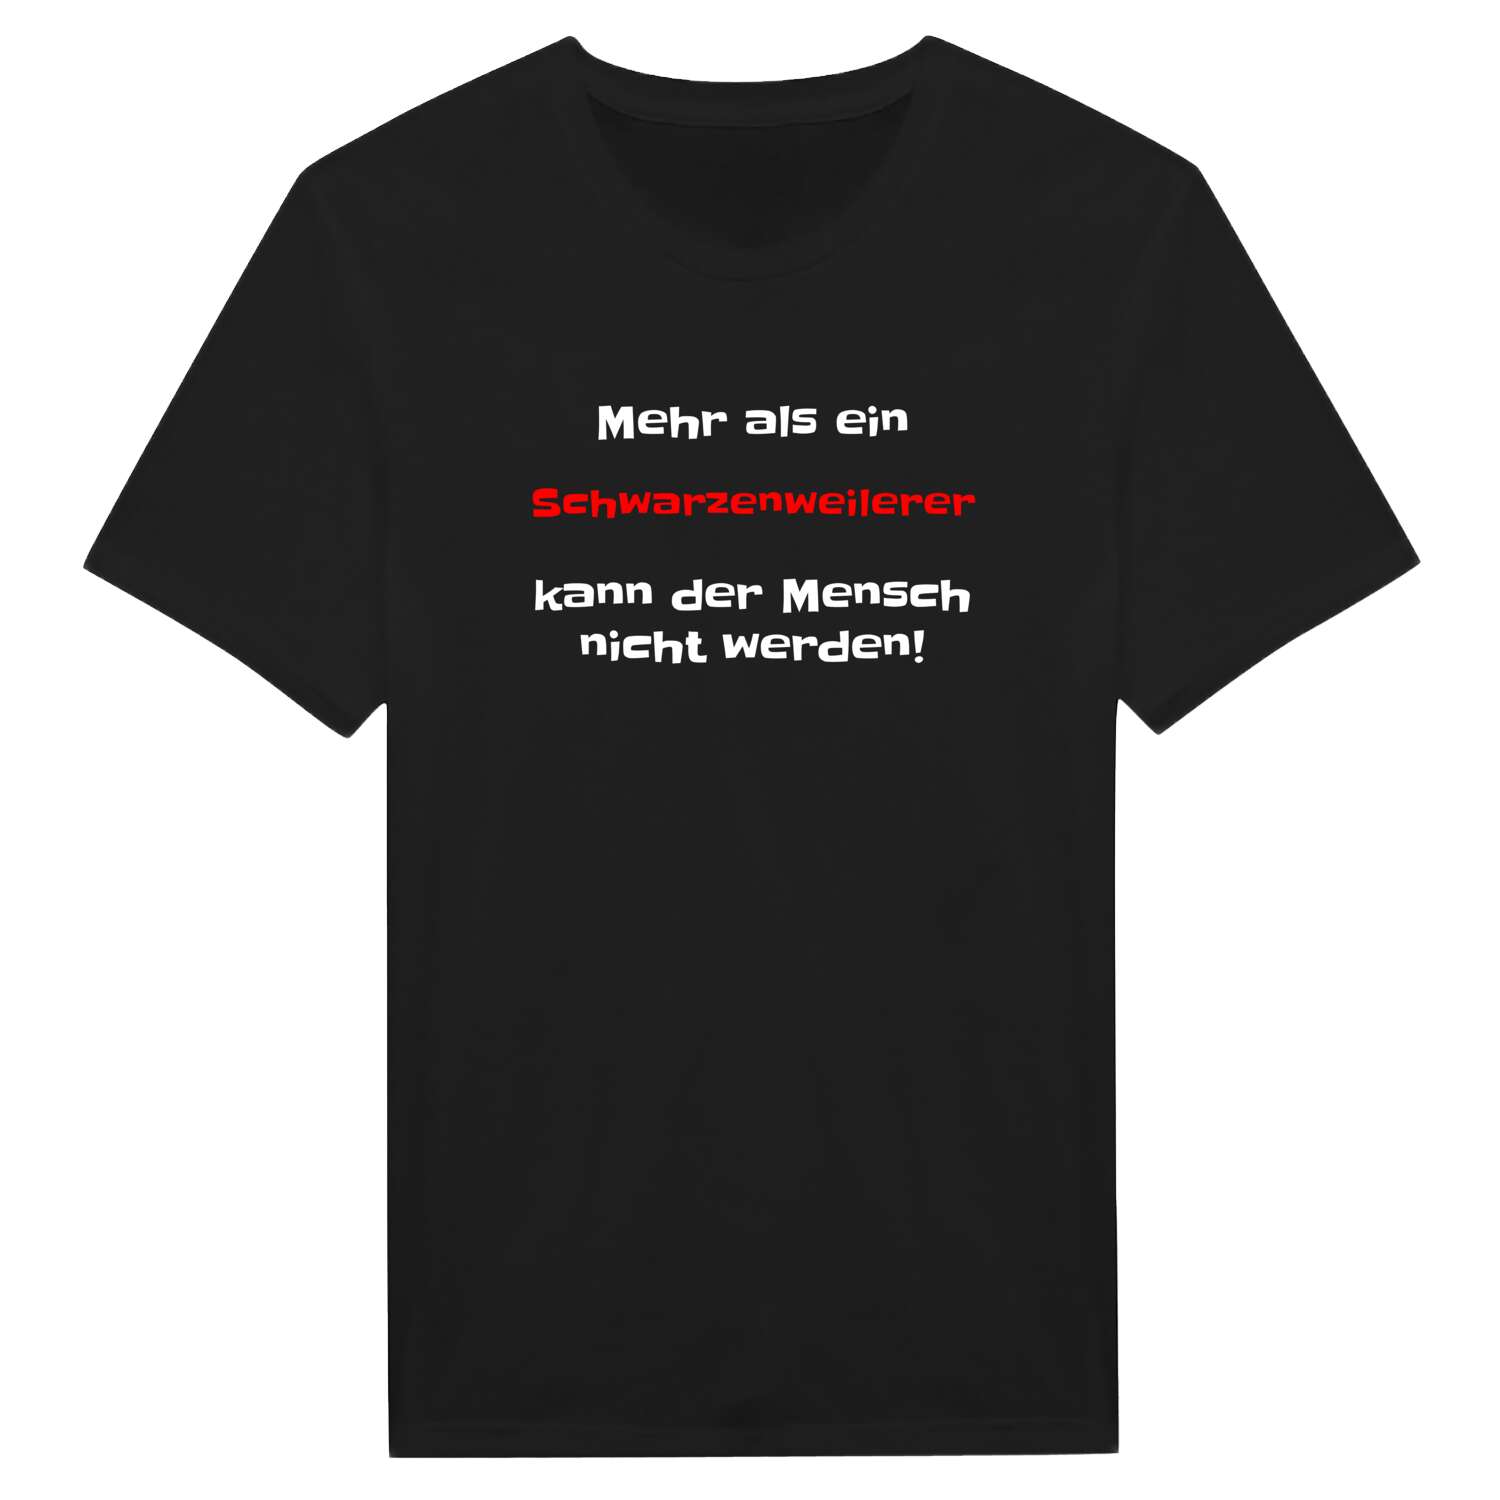 Schwarzenweiler T-Shirt »Mehr als ein«